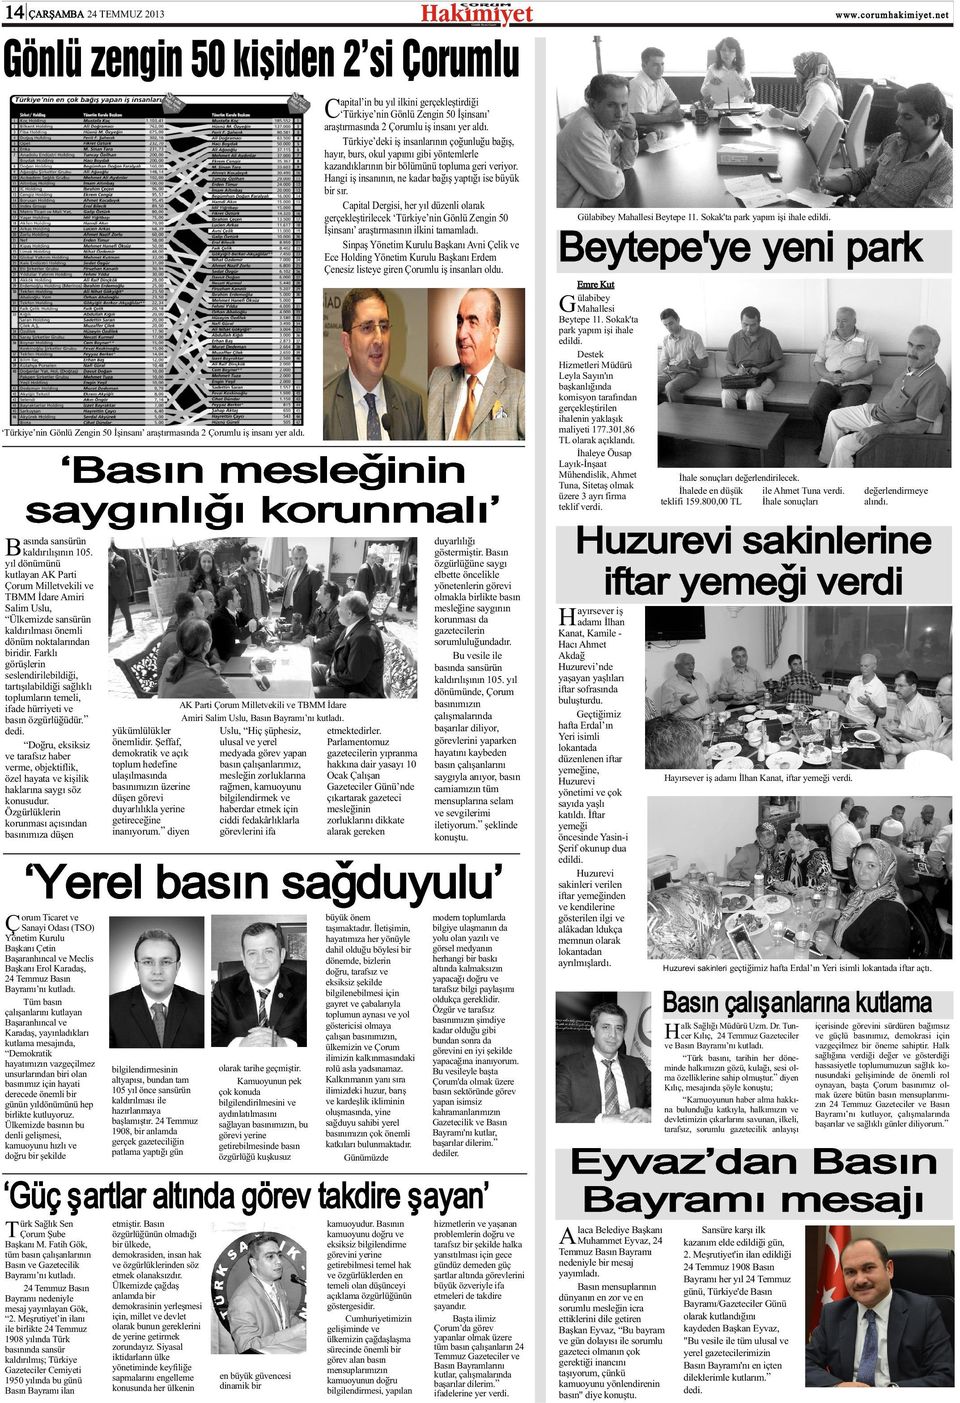 Capital Dergisi, her yýl düzenli olarak gerçekleþtirilecek Türkiye nin Gönlü Zengin 50 Ýþinsaný araþtýrmasýnýn ilkini tamamladý.